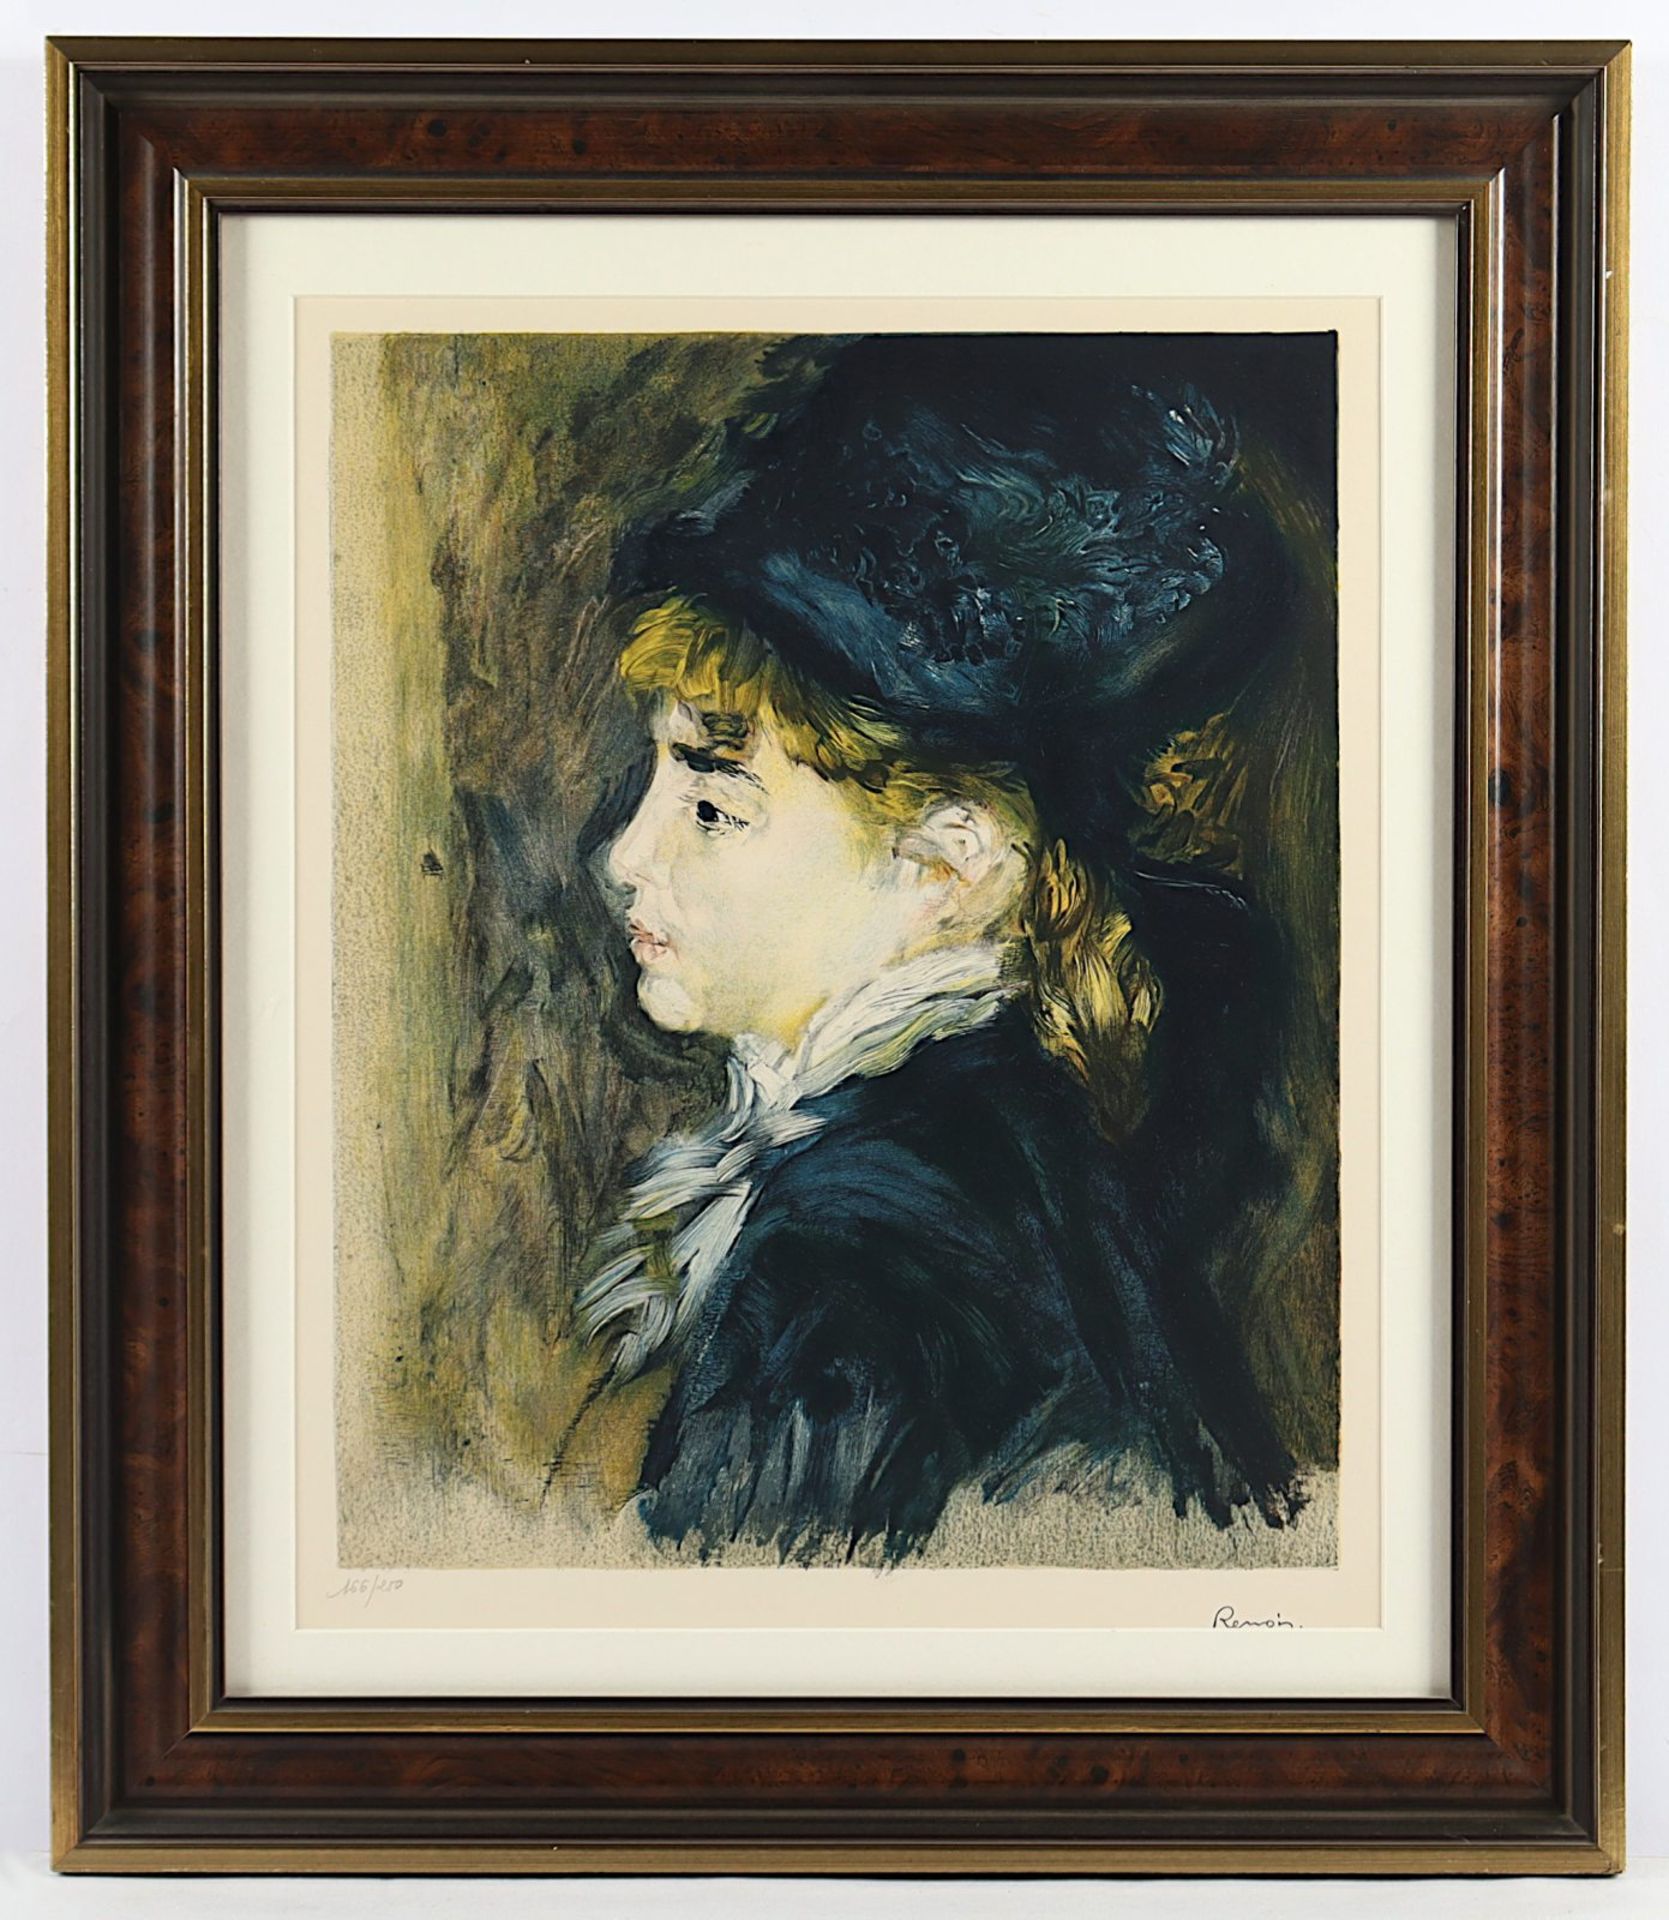 Renoir, Auguste (1841-1919), "Portrait von Margot", Farblithografie, R.